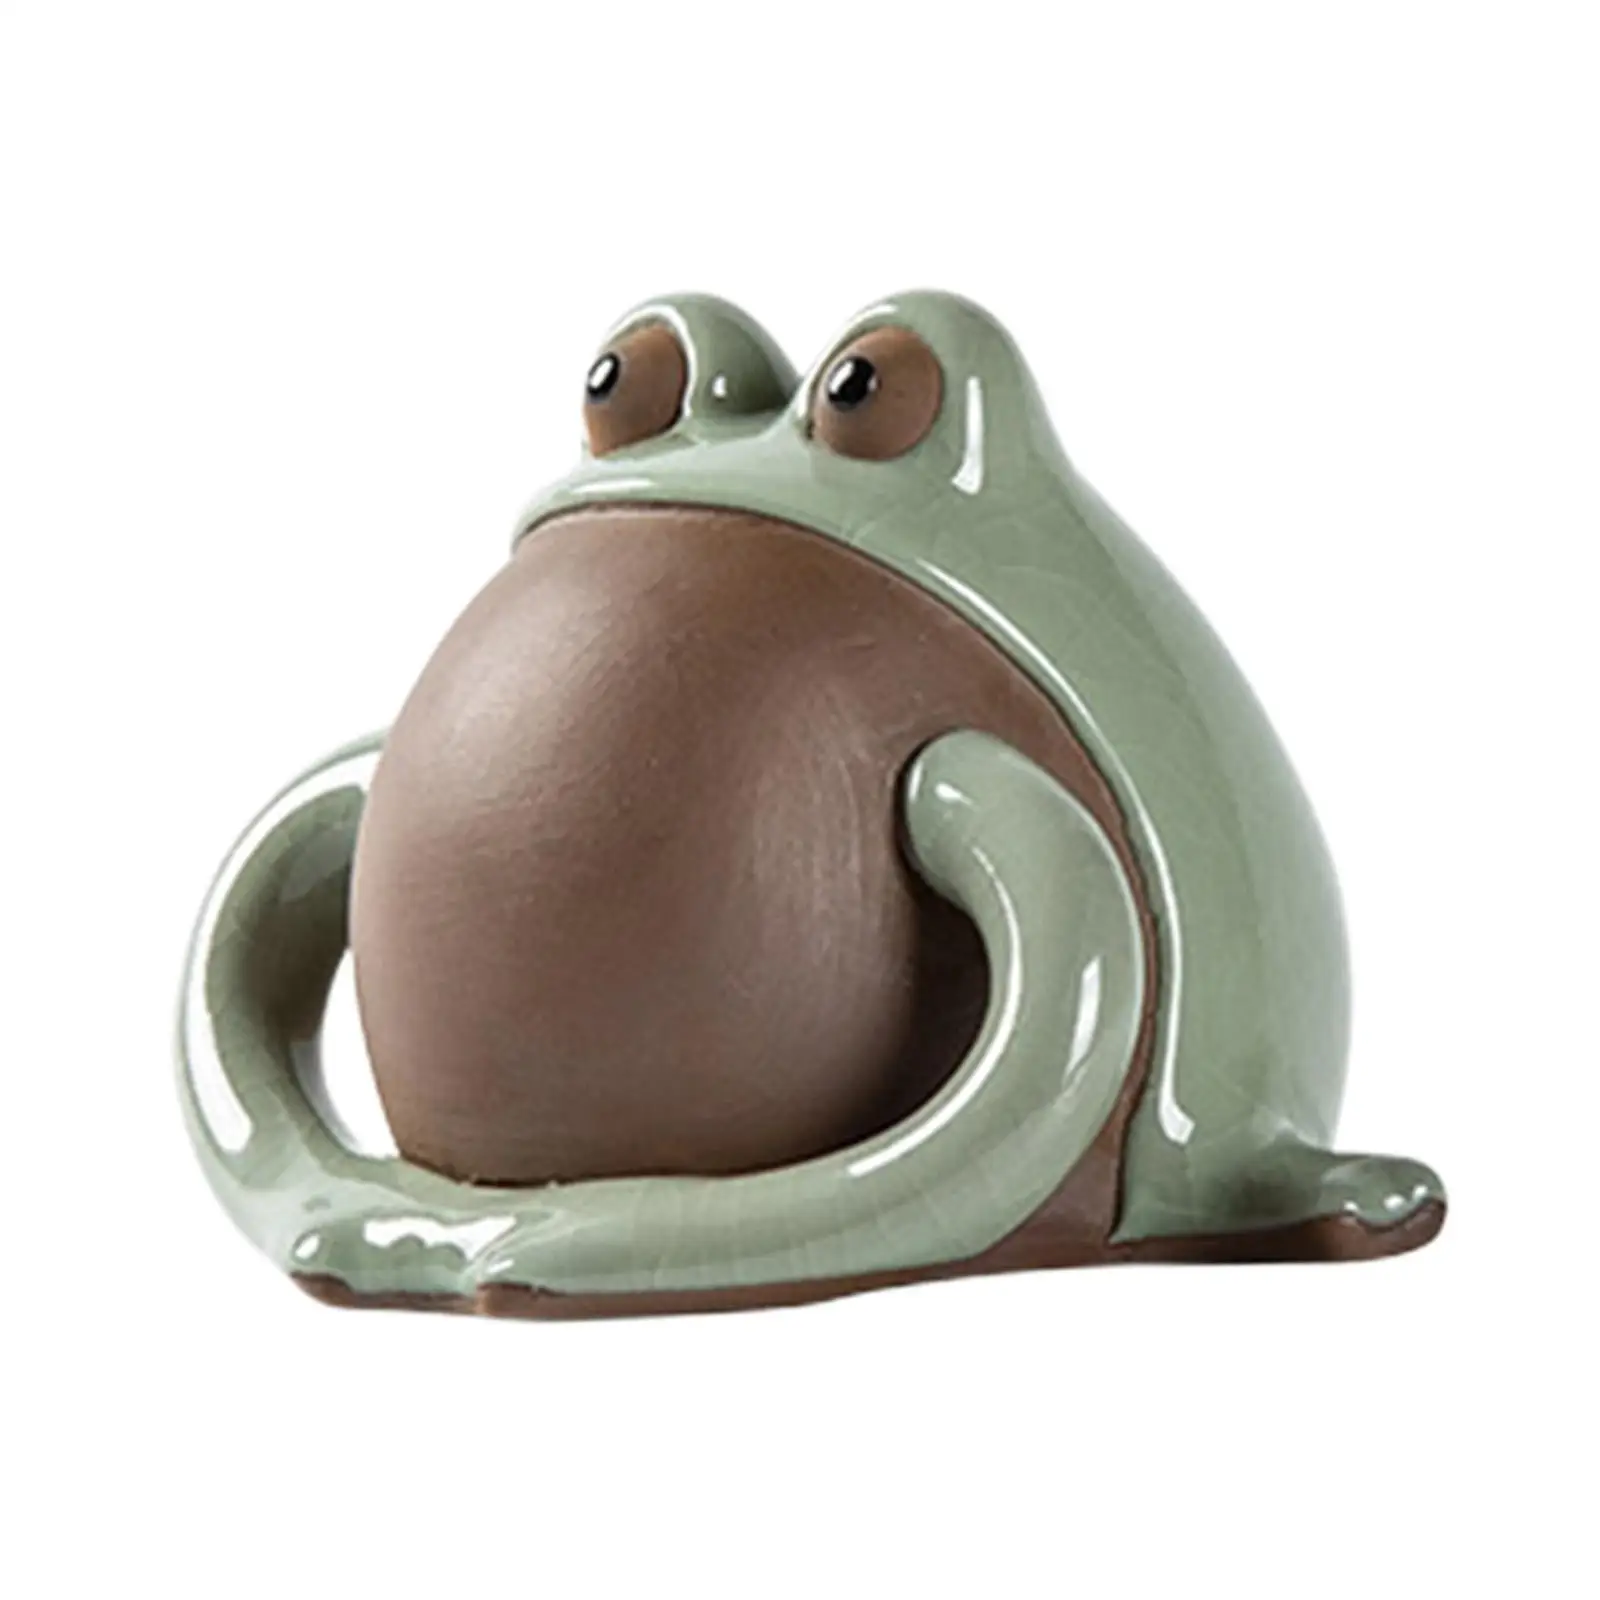 Tea Pet Lovers Gifts Frog Statue for Table Centerpiece Tea Room Desktop